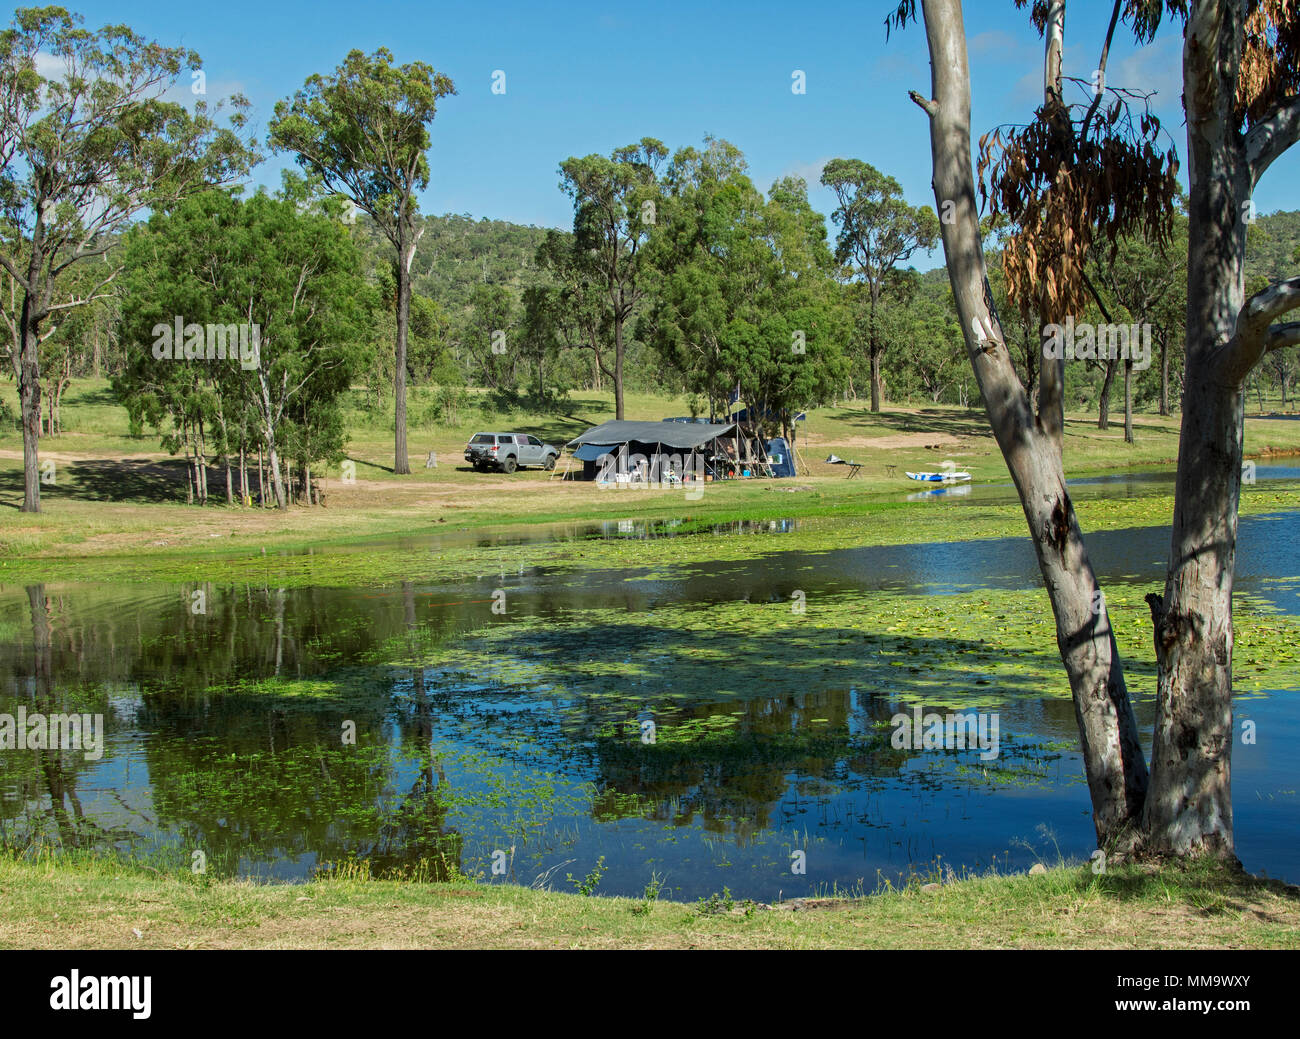 Camper con Auto e tenda in uno splendido paesaggio boscoso che si riflette nelle calme acque blu del lago sotto il cielo blu a diga Eungalla Australia Foto Stock